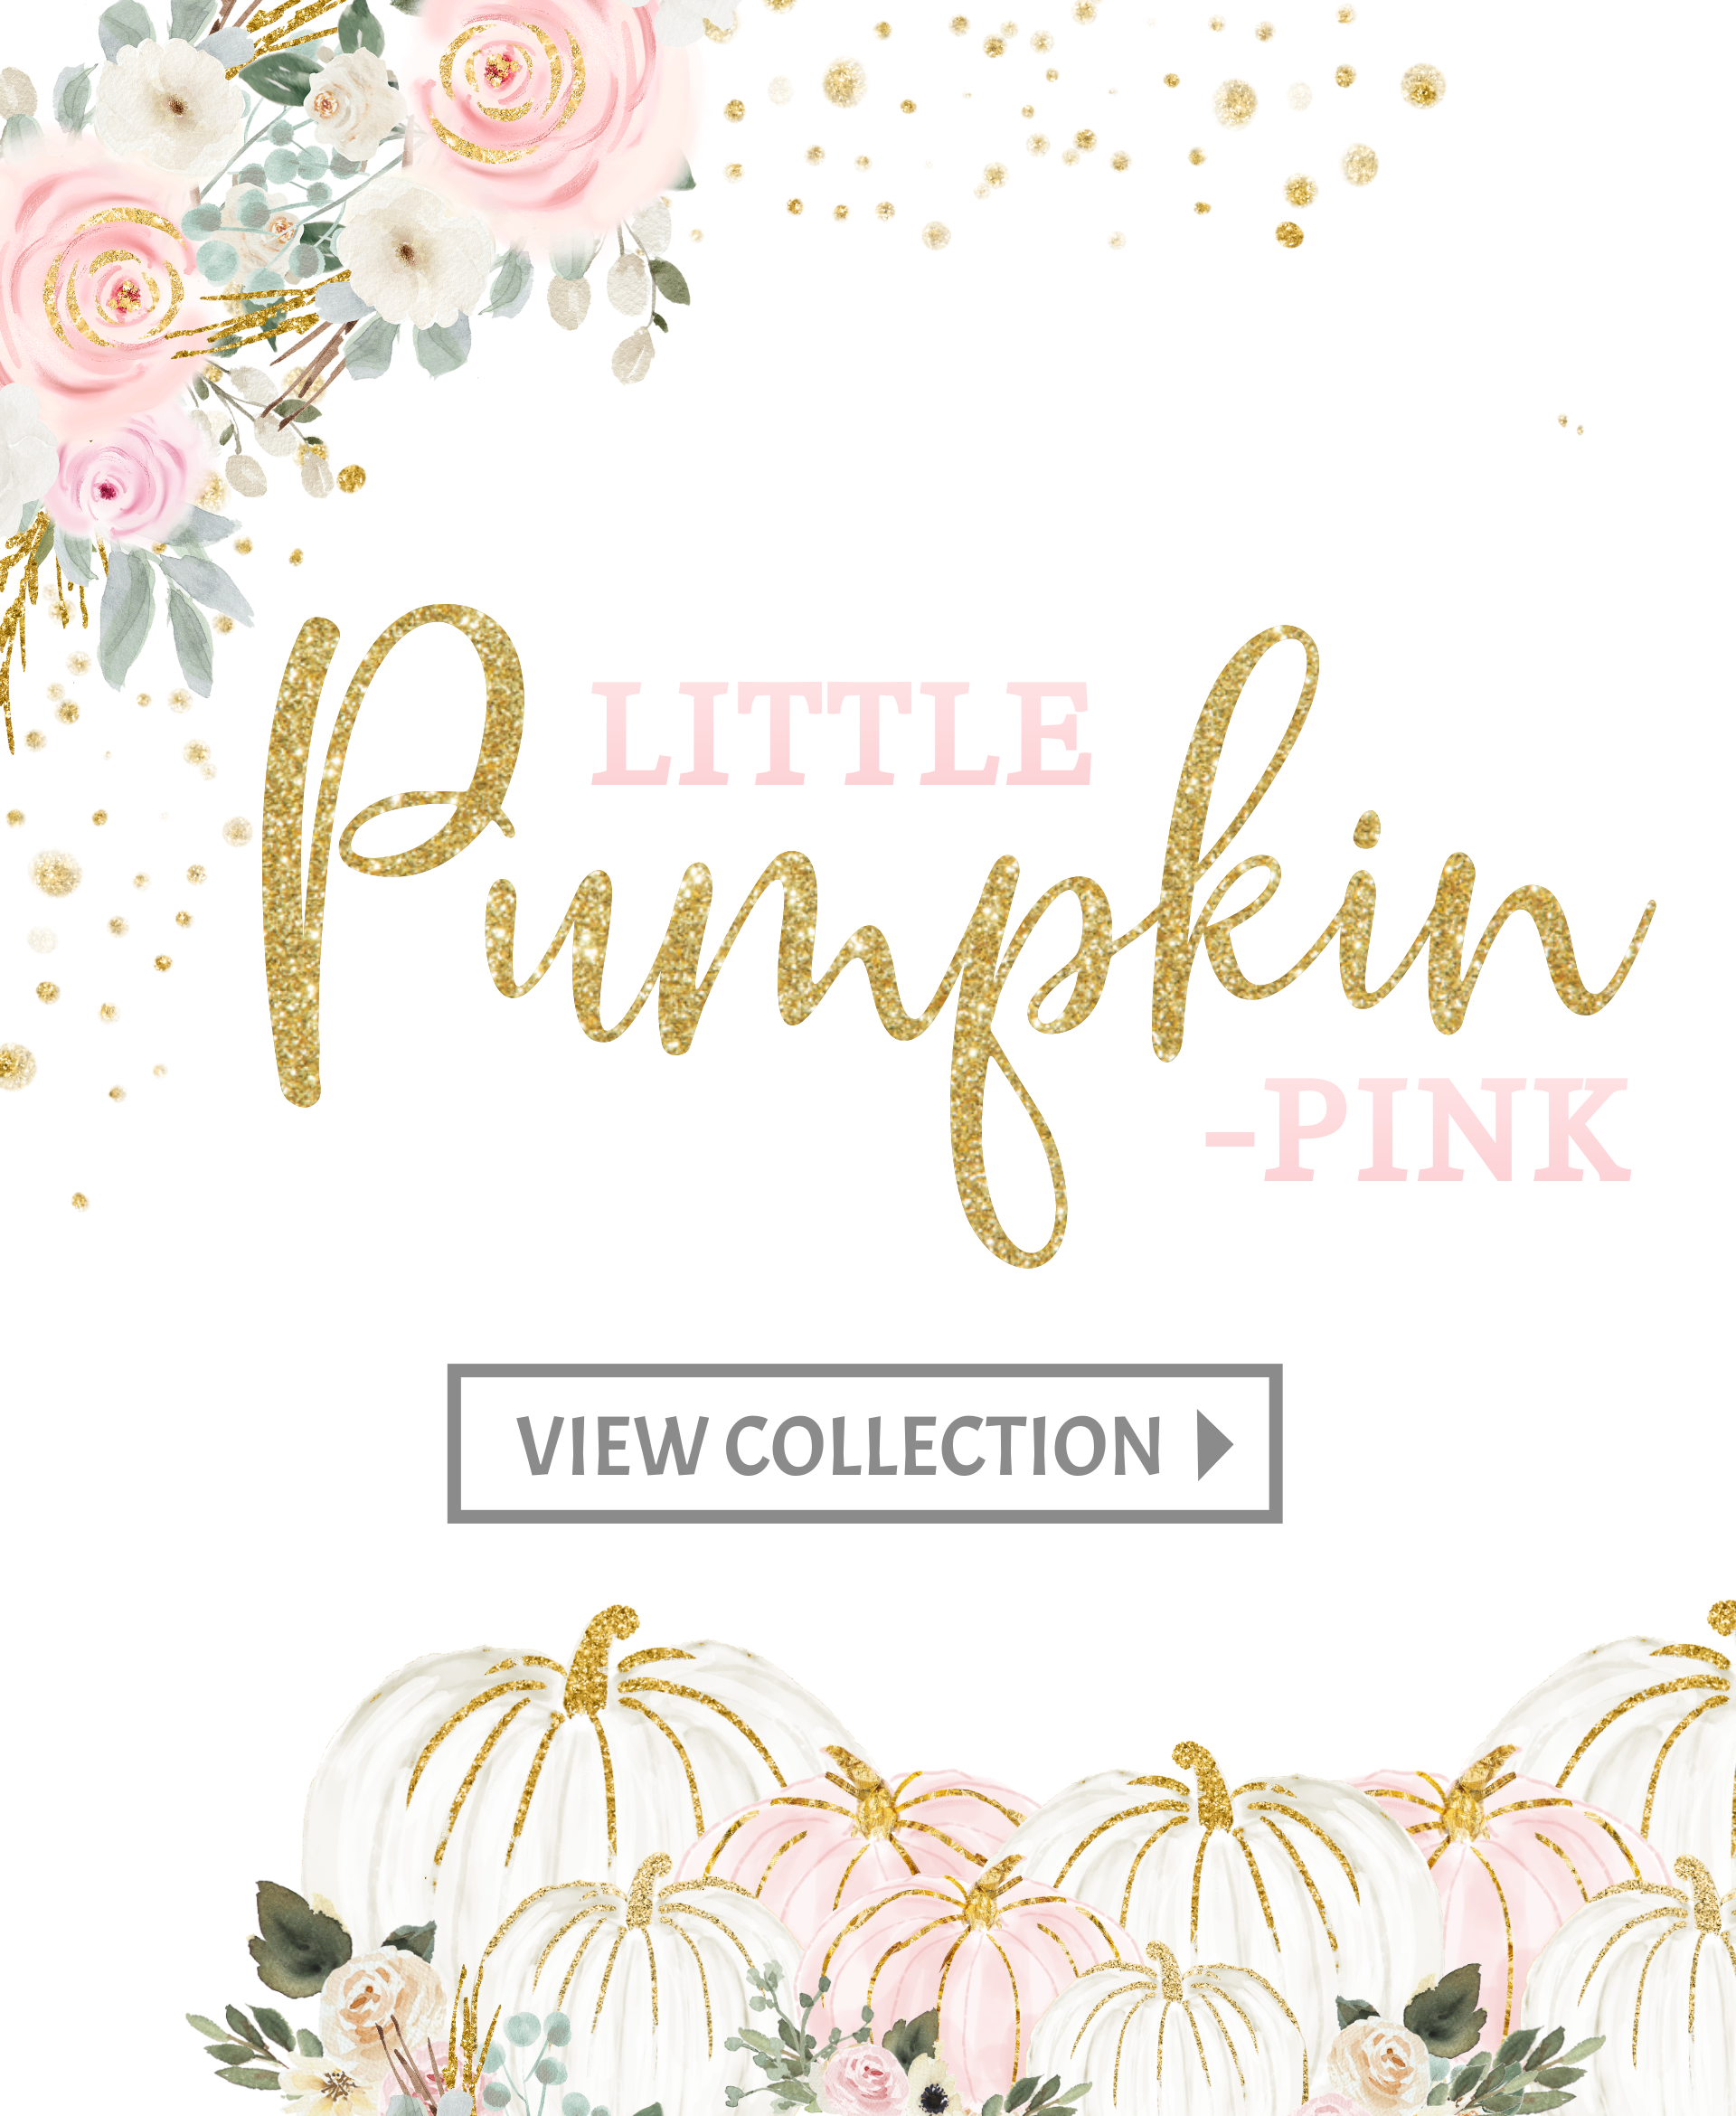 Little Pumpkin Pink